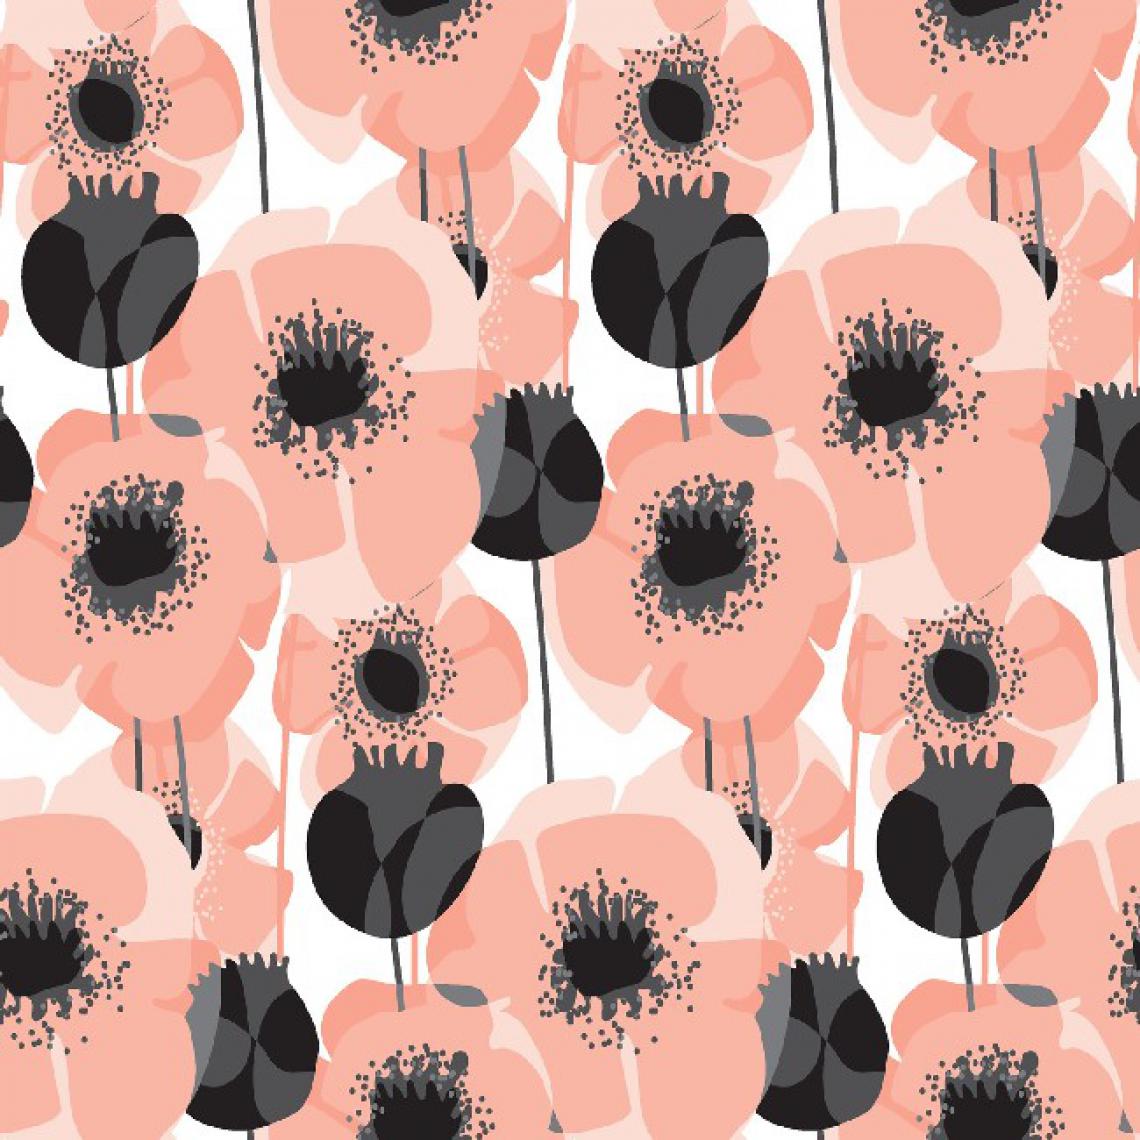 Homemania - HOMEMANIA Tapis Imprimé Feel The Pink - Nature - Décoration de Maison - Antidérapants - Pour Salon, séjour, chambre à coucher - Multicolore en Polyester, Coton, 80 x 50 cm - Tapis